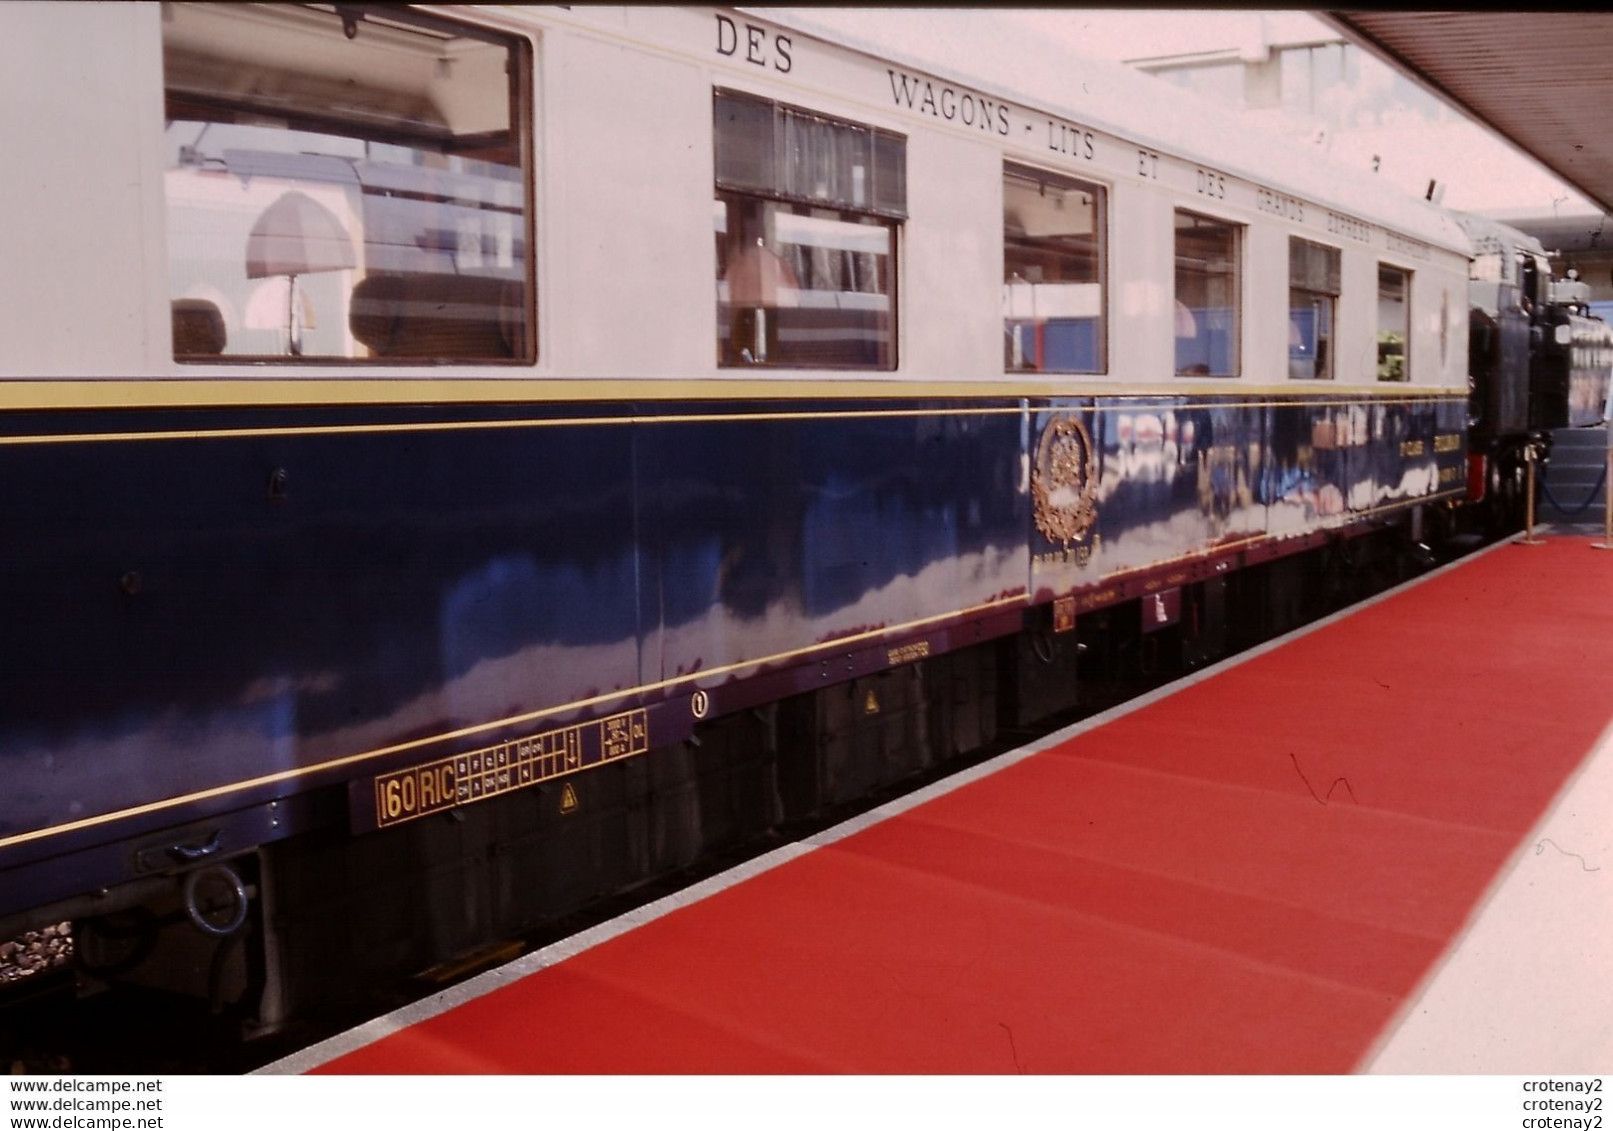 Photo Diapo Diapositive Slide Originale TRAINS Compagnie Des Wagons Lits Le 12/09/1998 VOIR ZOOM - Diapositive